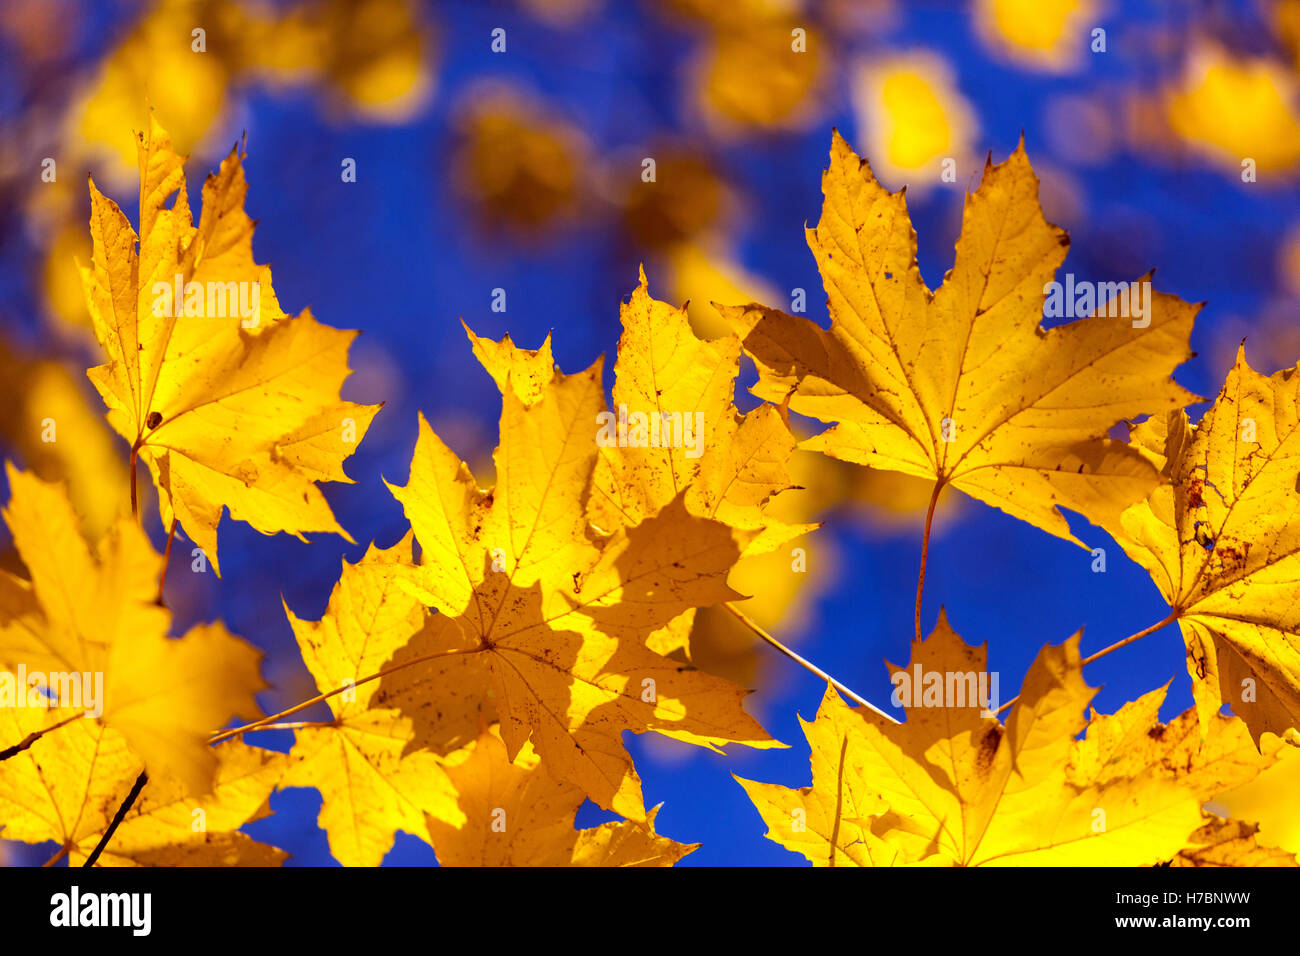 Feuilles d'érable jaune Norvège feuilles d'érable soleil automne Banque D'Images